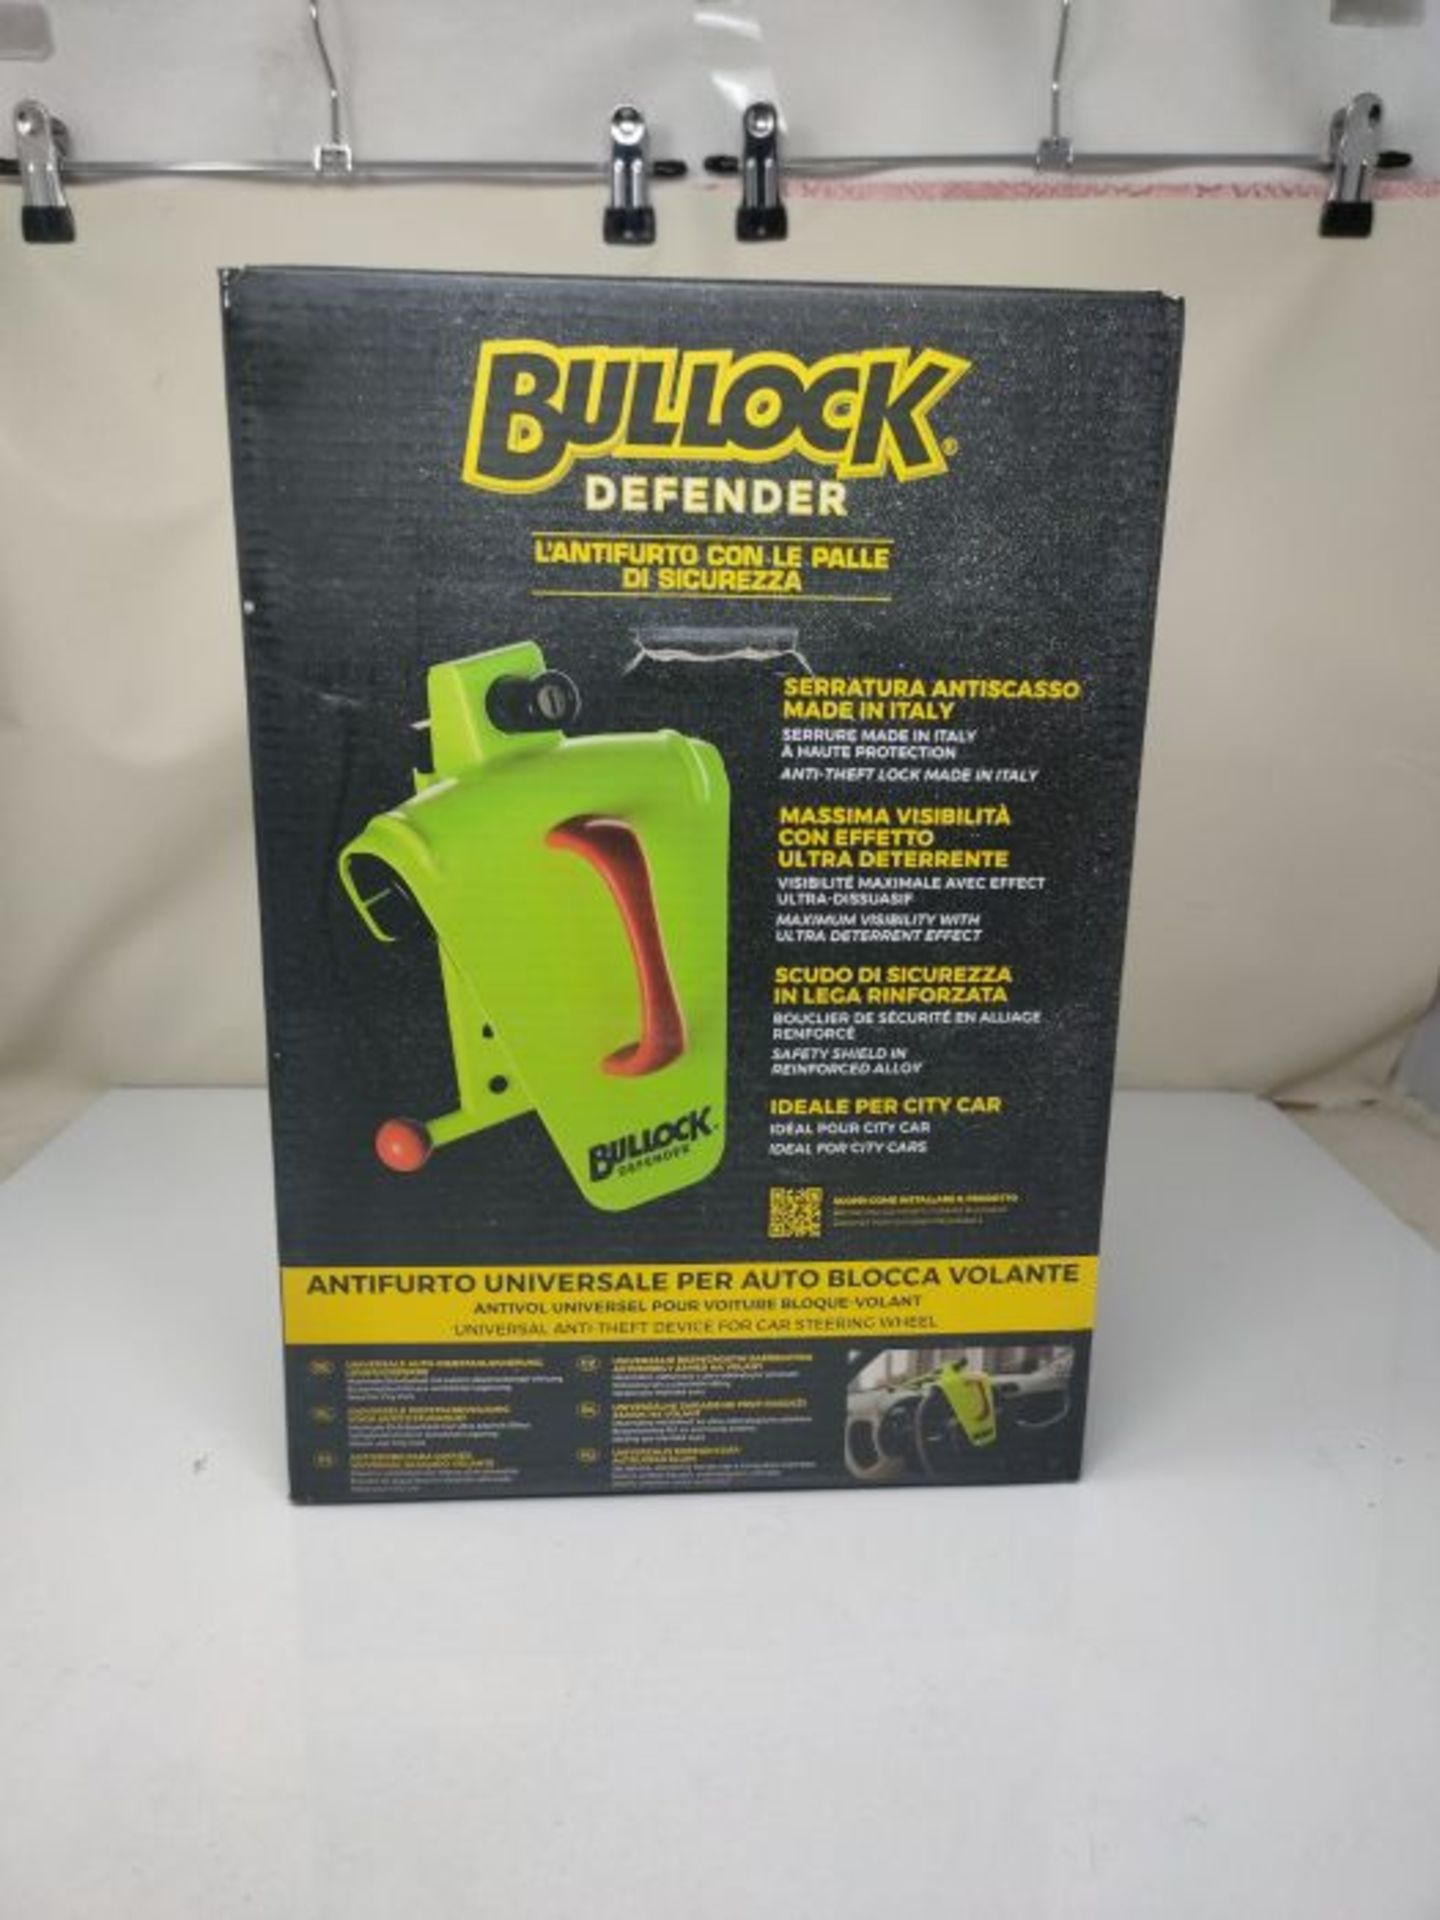 Bullock 146716, Defender, Antifurto Universale per Auto, Blocca Volante, con Scudo in - Image 2 of 3